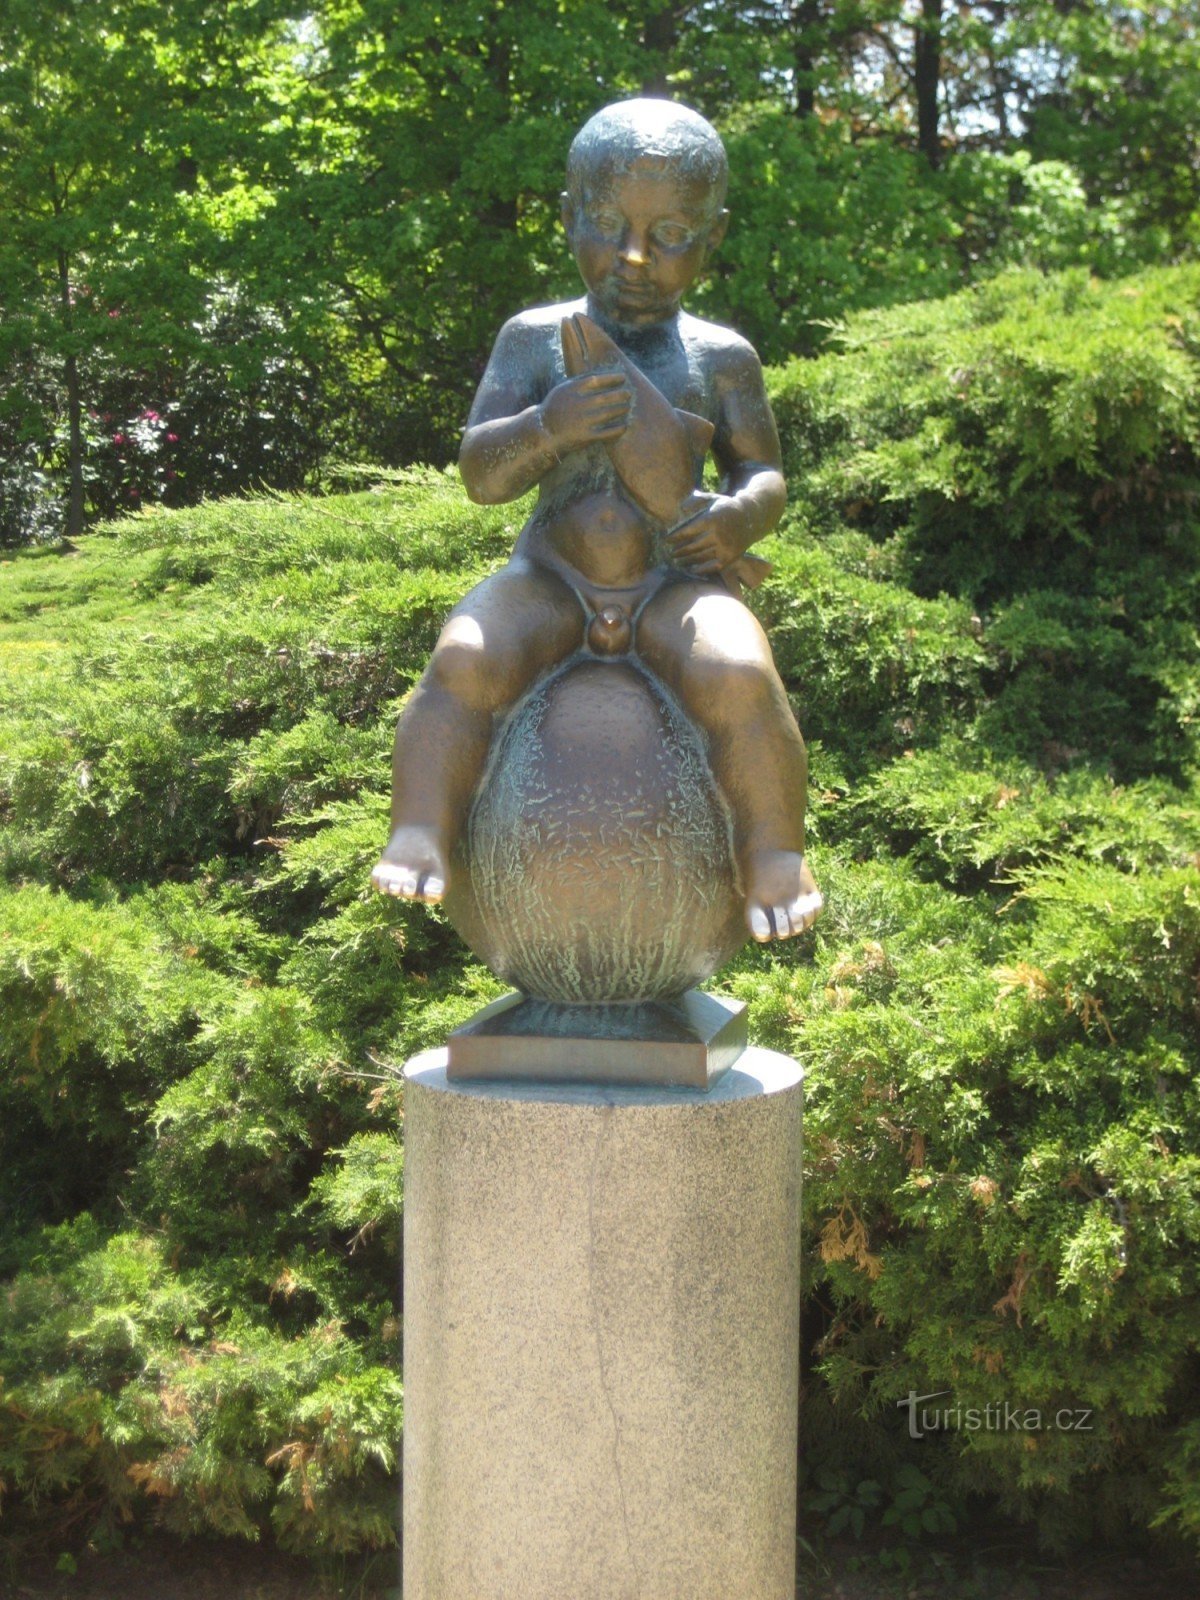 Staty av Franciskus - fotograferad den 19.5.2012 maj XNUMX